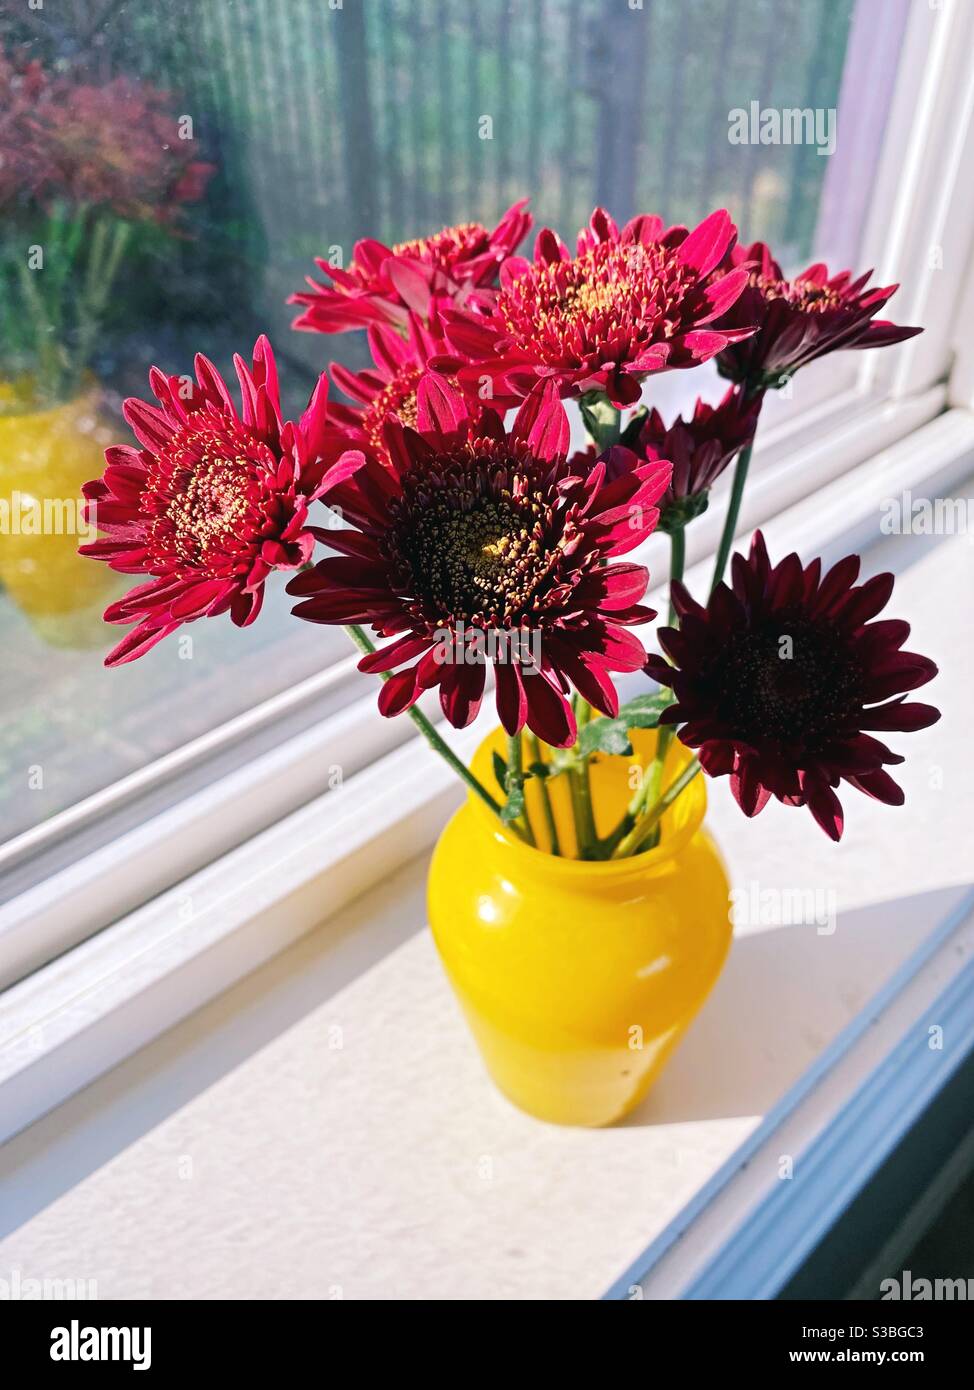 Eine Anordnung von roten Blumen in einer gelben Vase auf einer Fensterbank. Stockfoto